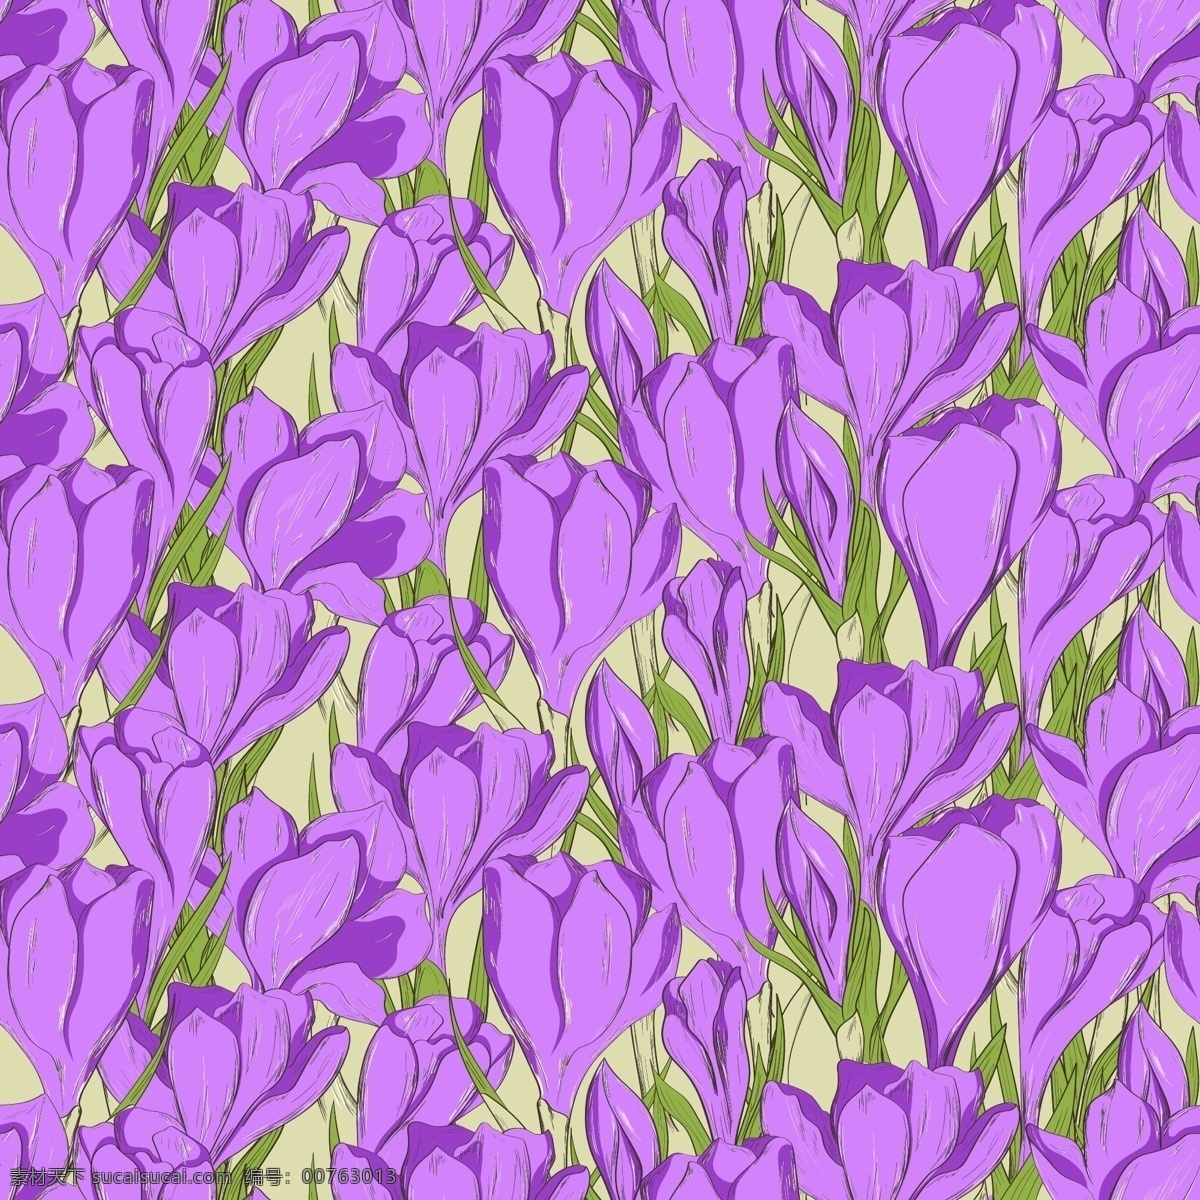 手绘 茂密 花朵 背景 矢量 粉黄色 绿叶 平面素材 设计素材 矢量素材 植物 紫色